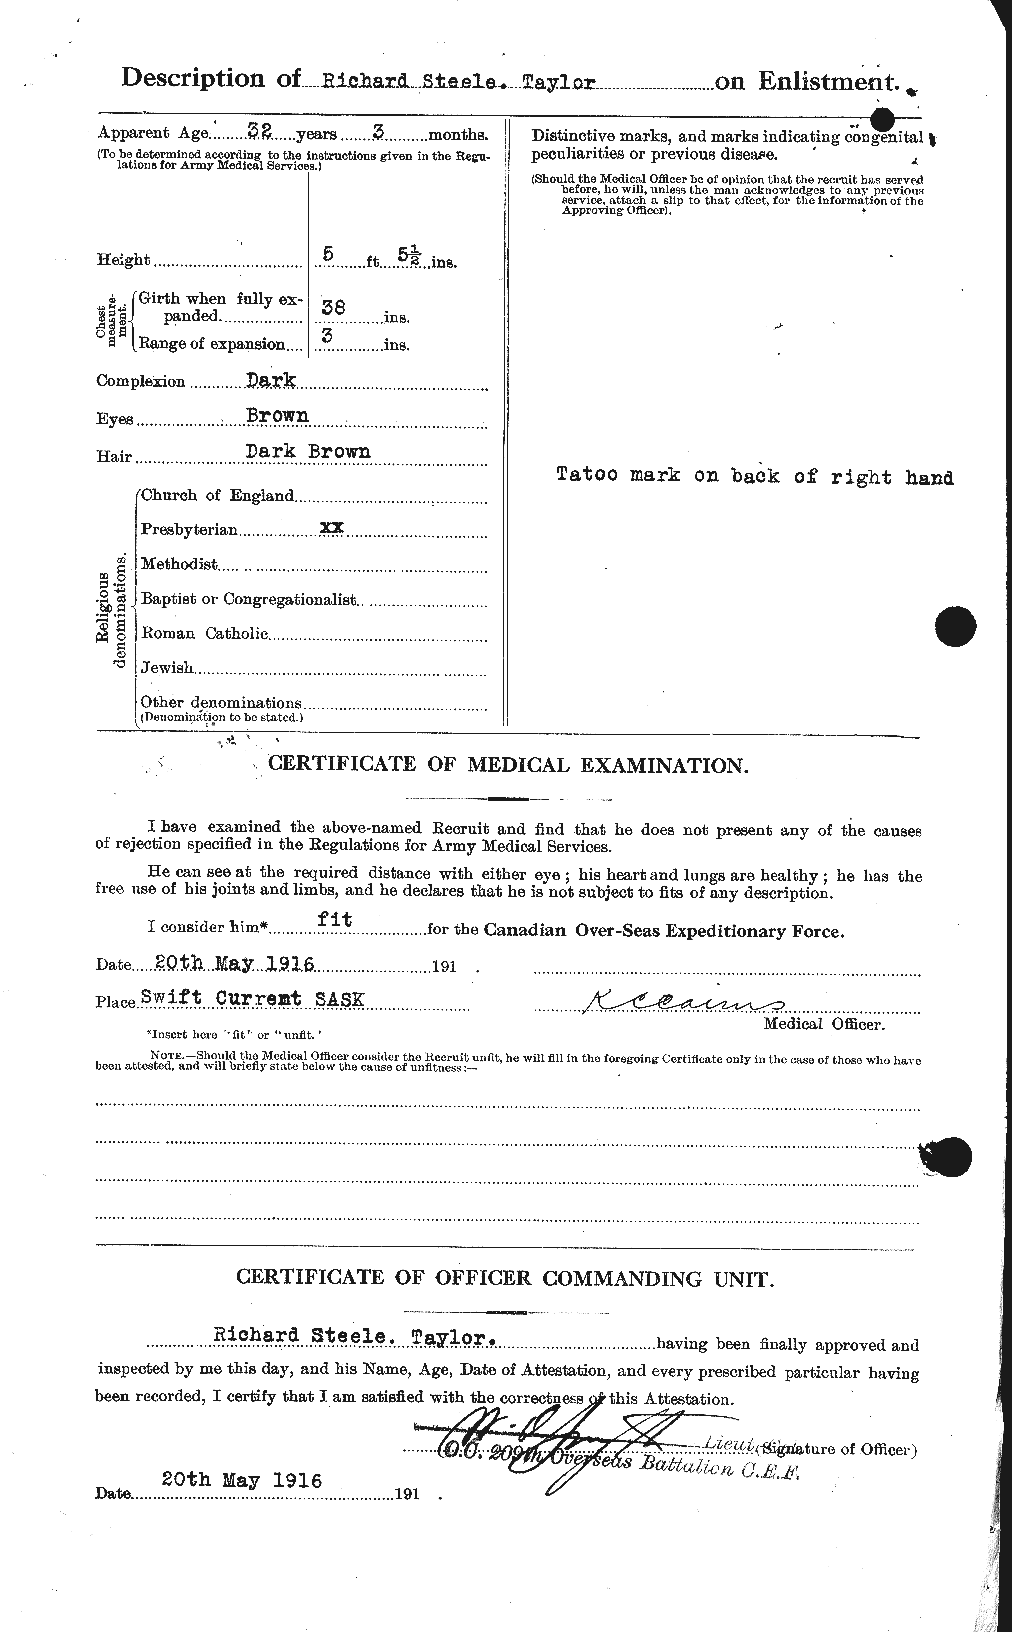 Dossiers du Personnel de la Première Guerre mondiale - CEC 627421b